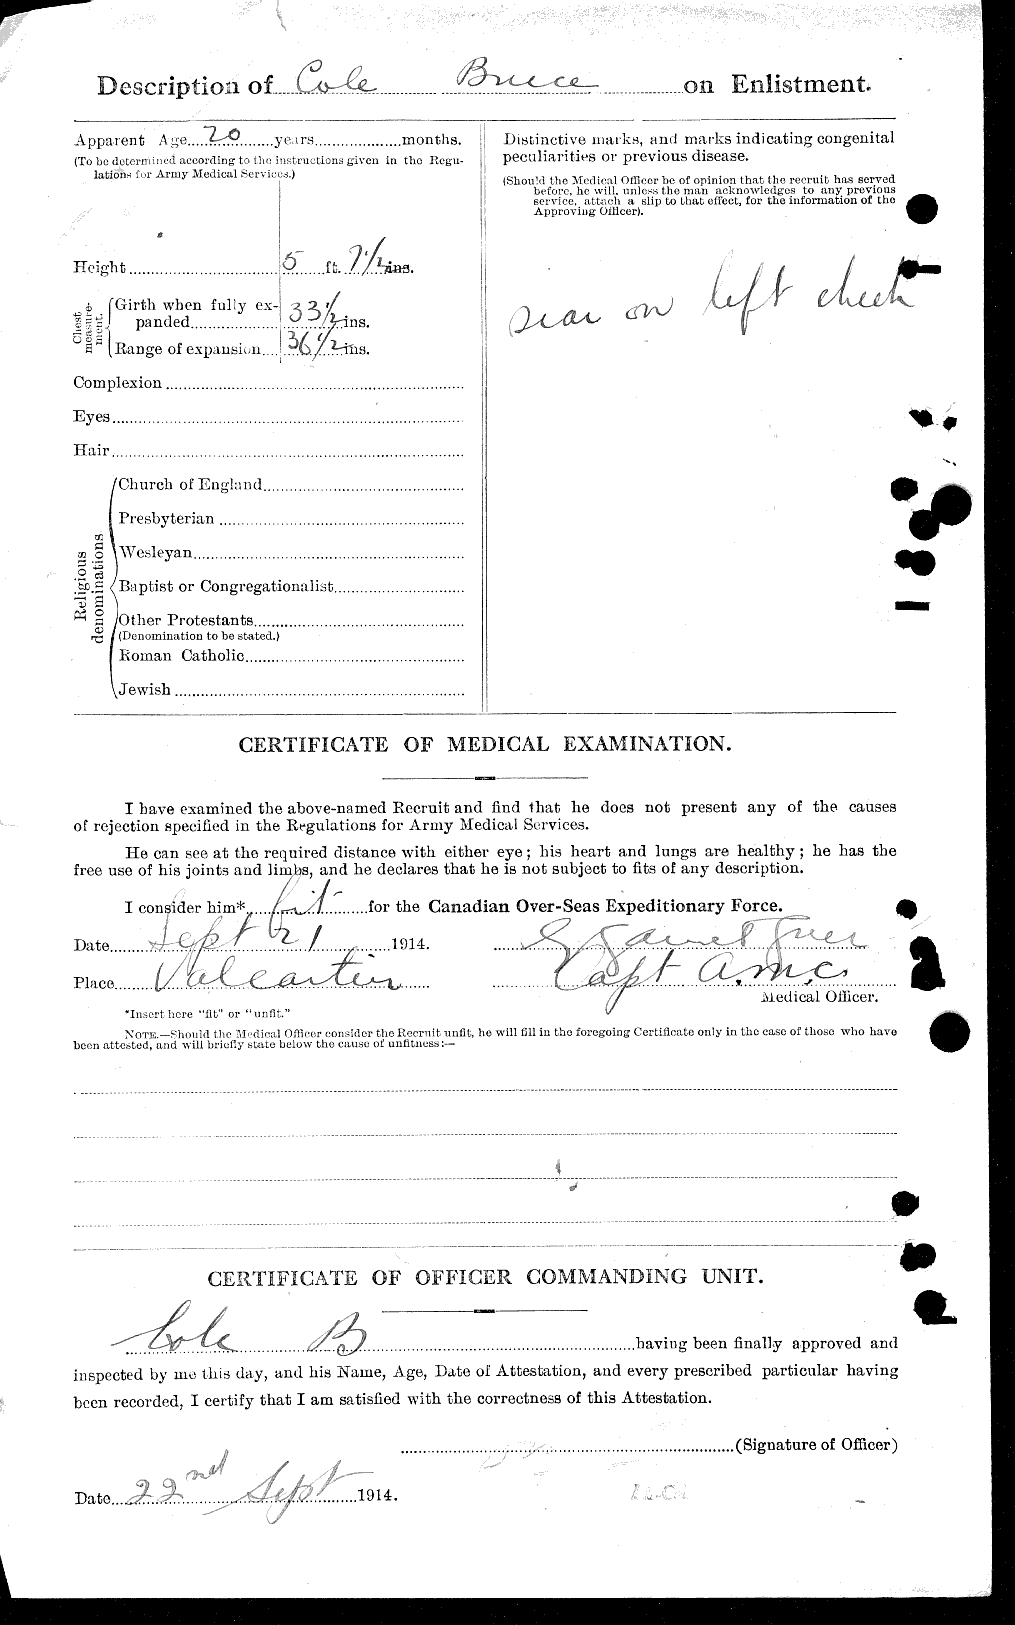 Dossiers du Personnel de la Première Guerre mondiale - CEC 027626b